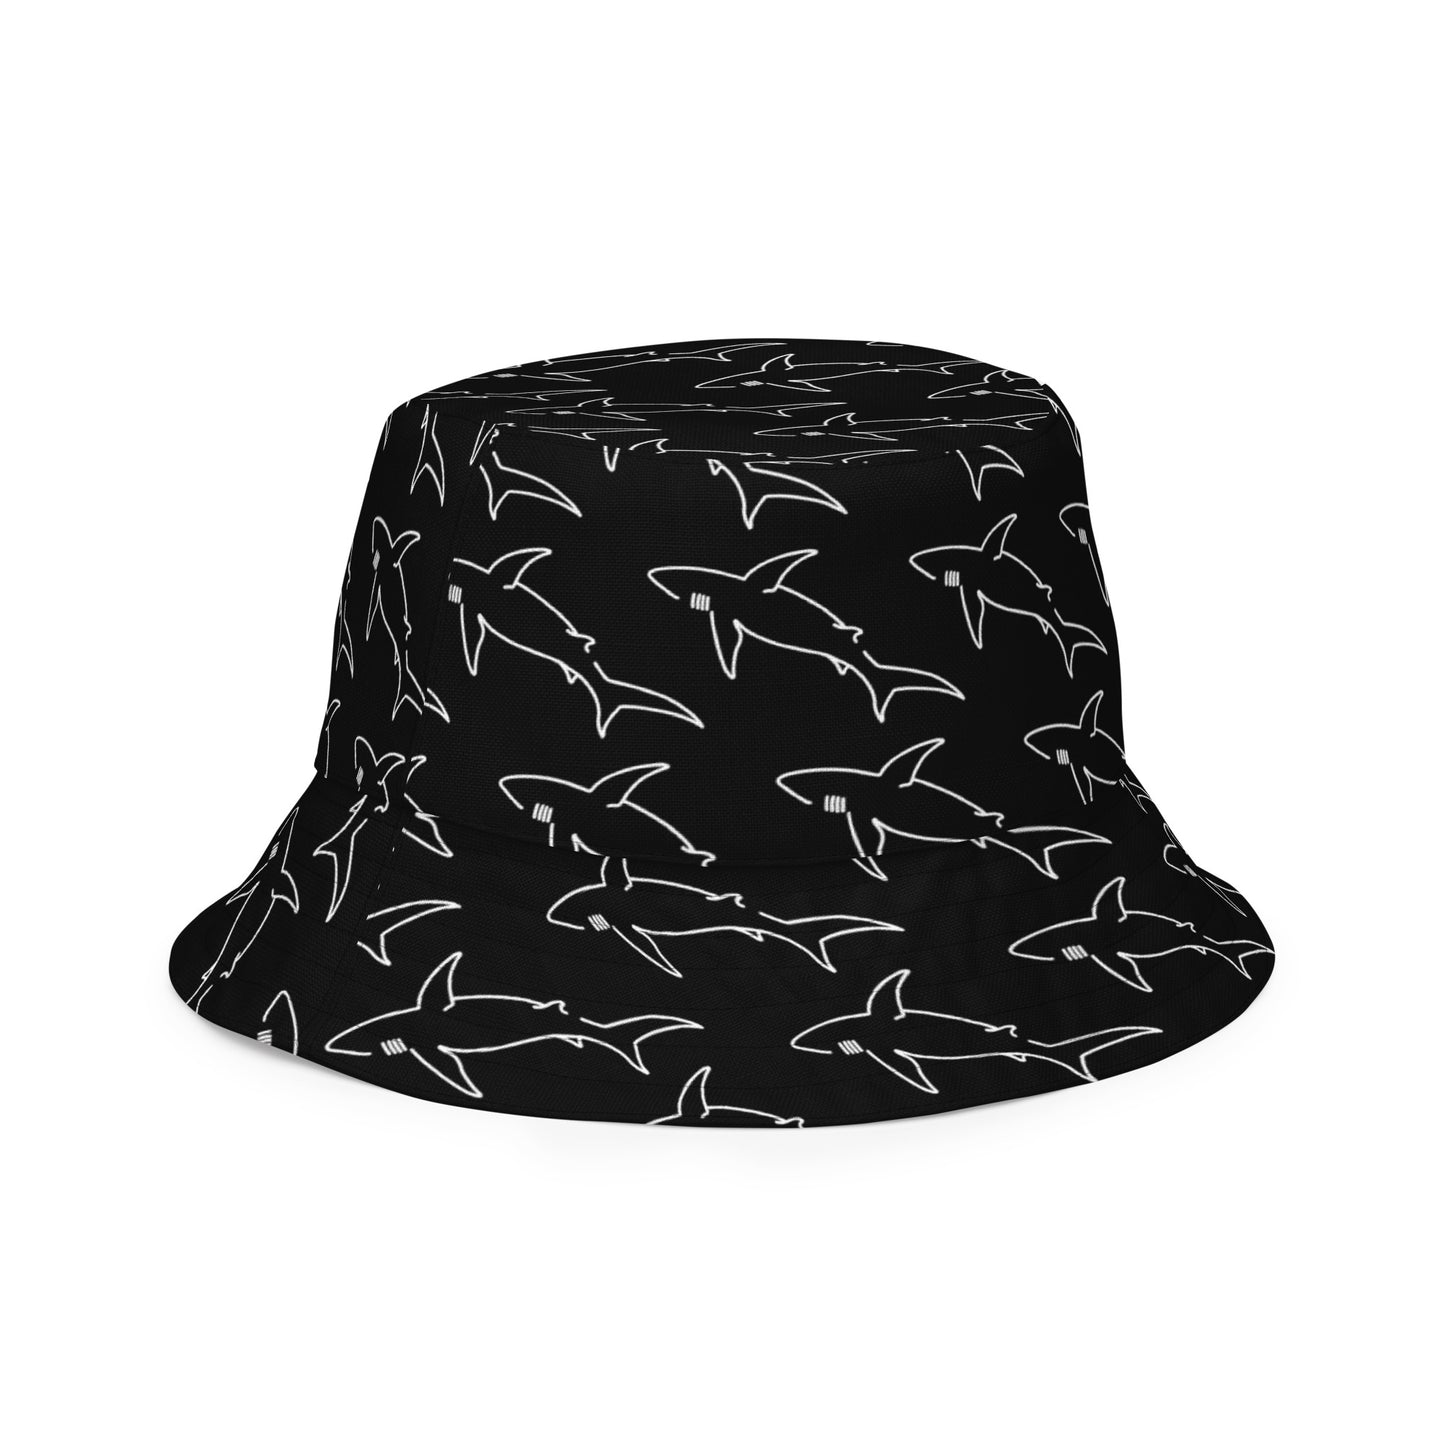 Reversible bucket hat white shark tattoo print